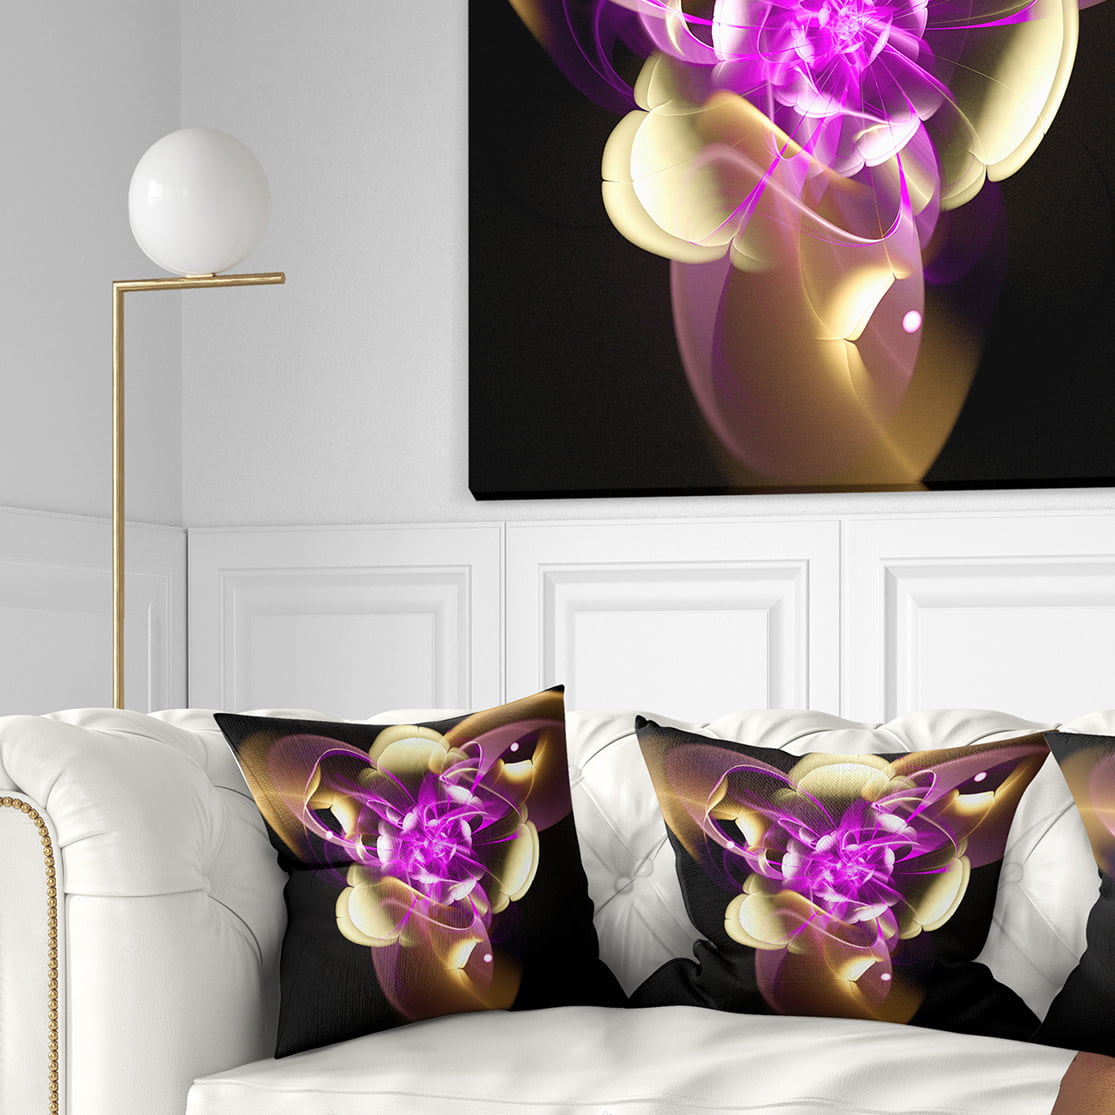 Designart CU7278-18-18 Golden Metallic Fractal Flower Abstract Throw Pillow 18 x 18